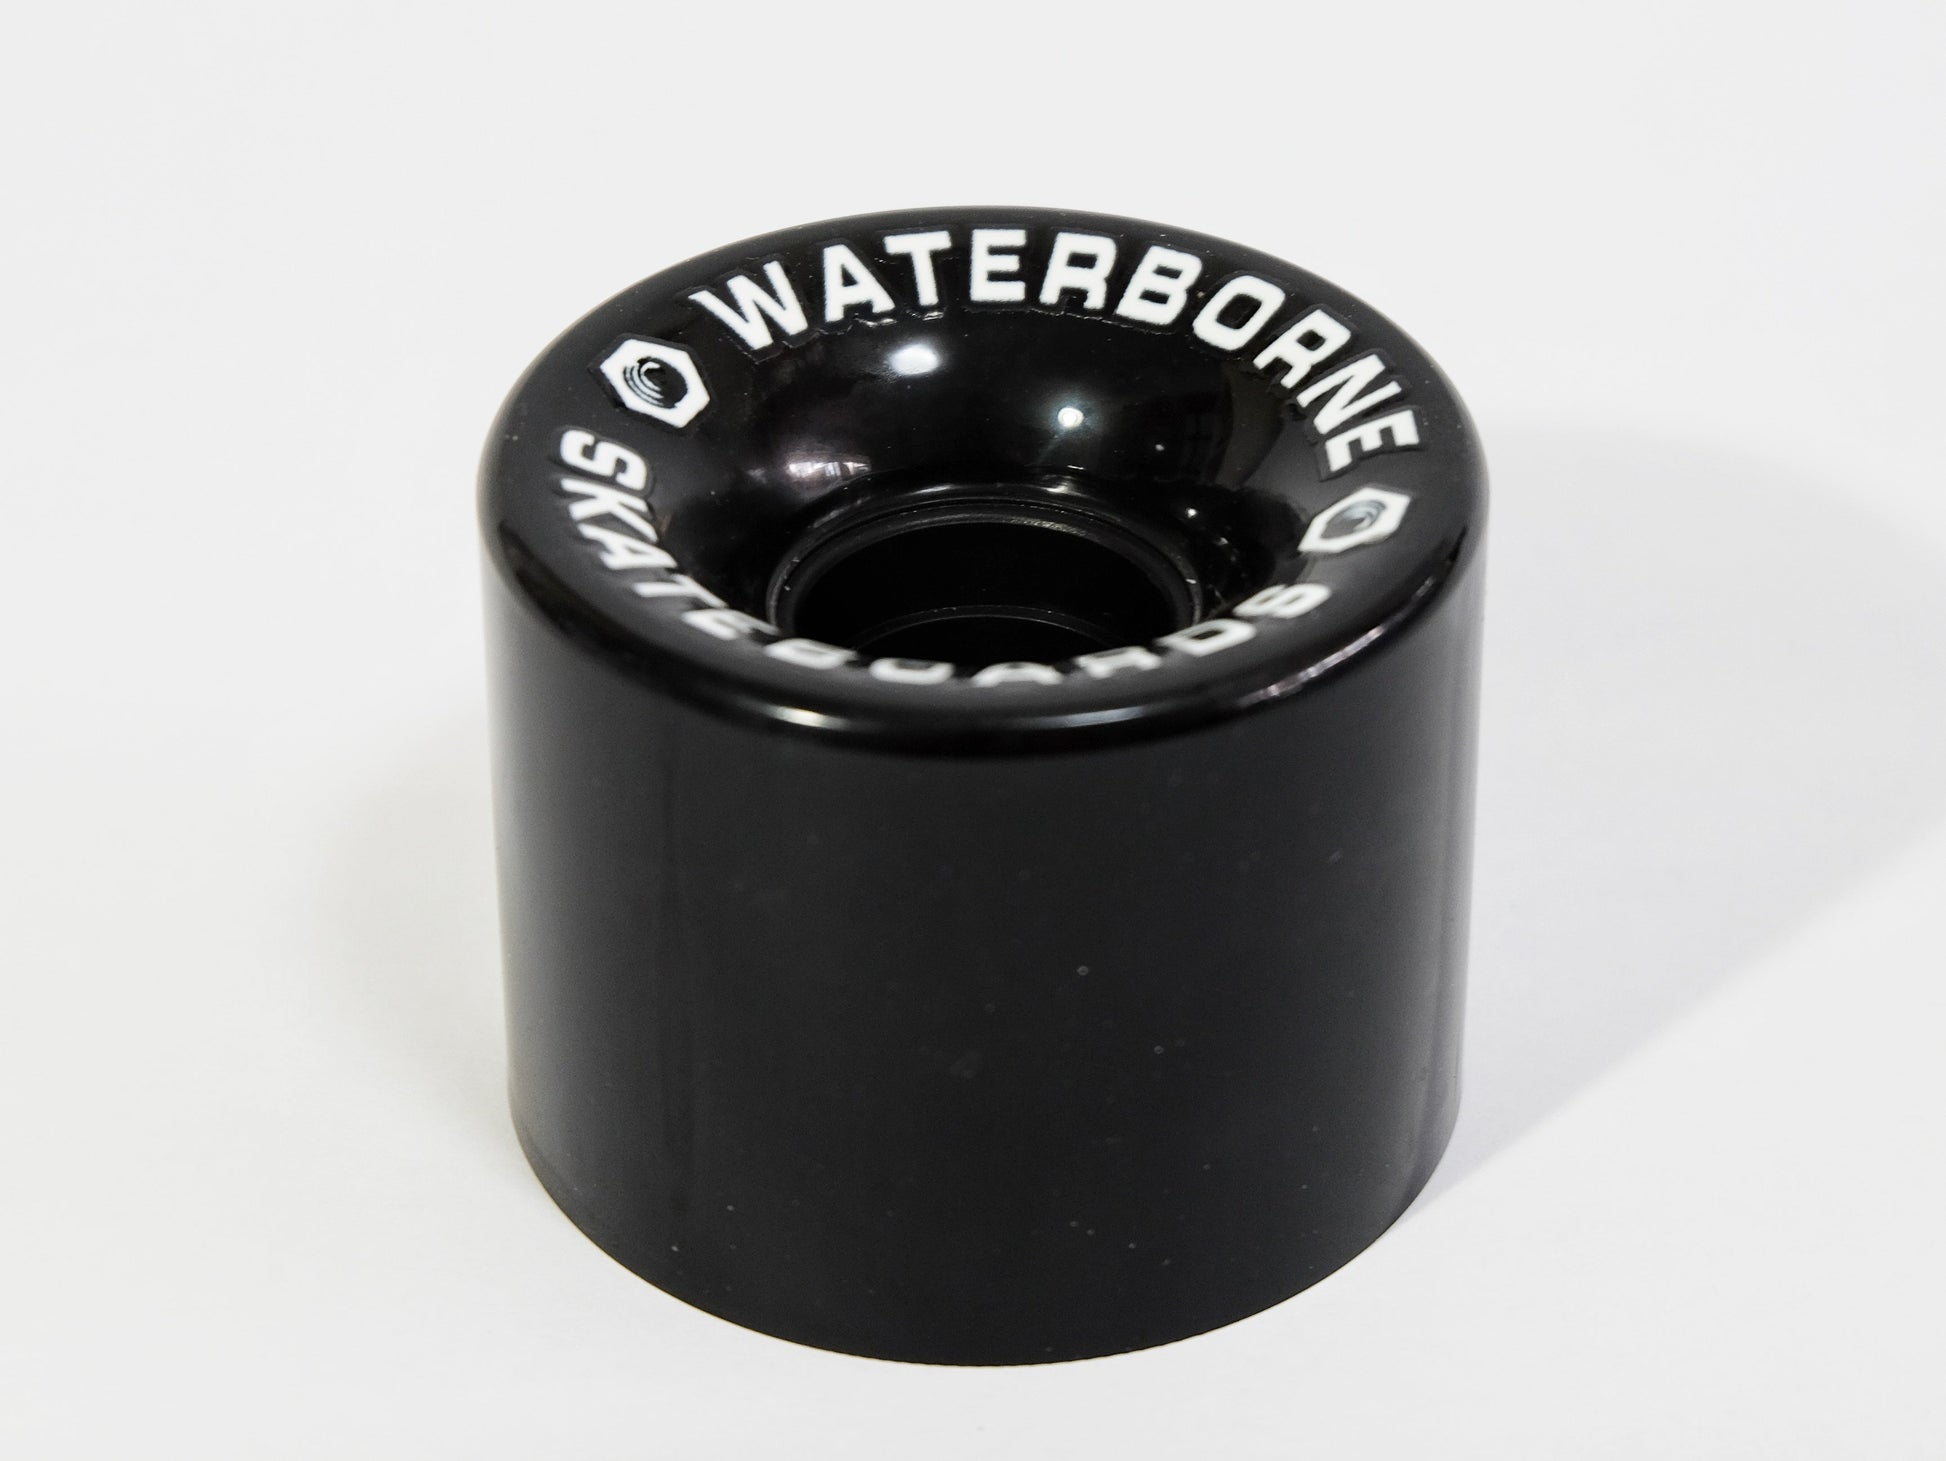 Waterborne Super Carve Wheels - Custom Longboard Builder - SkatebruhSG